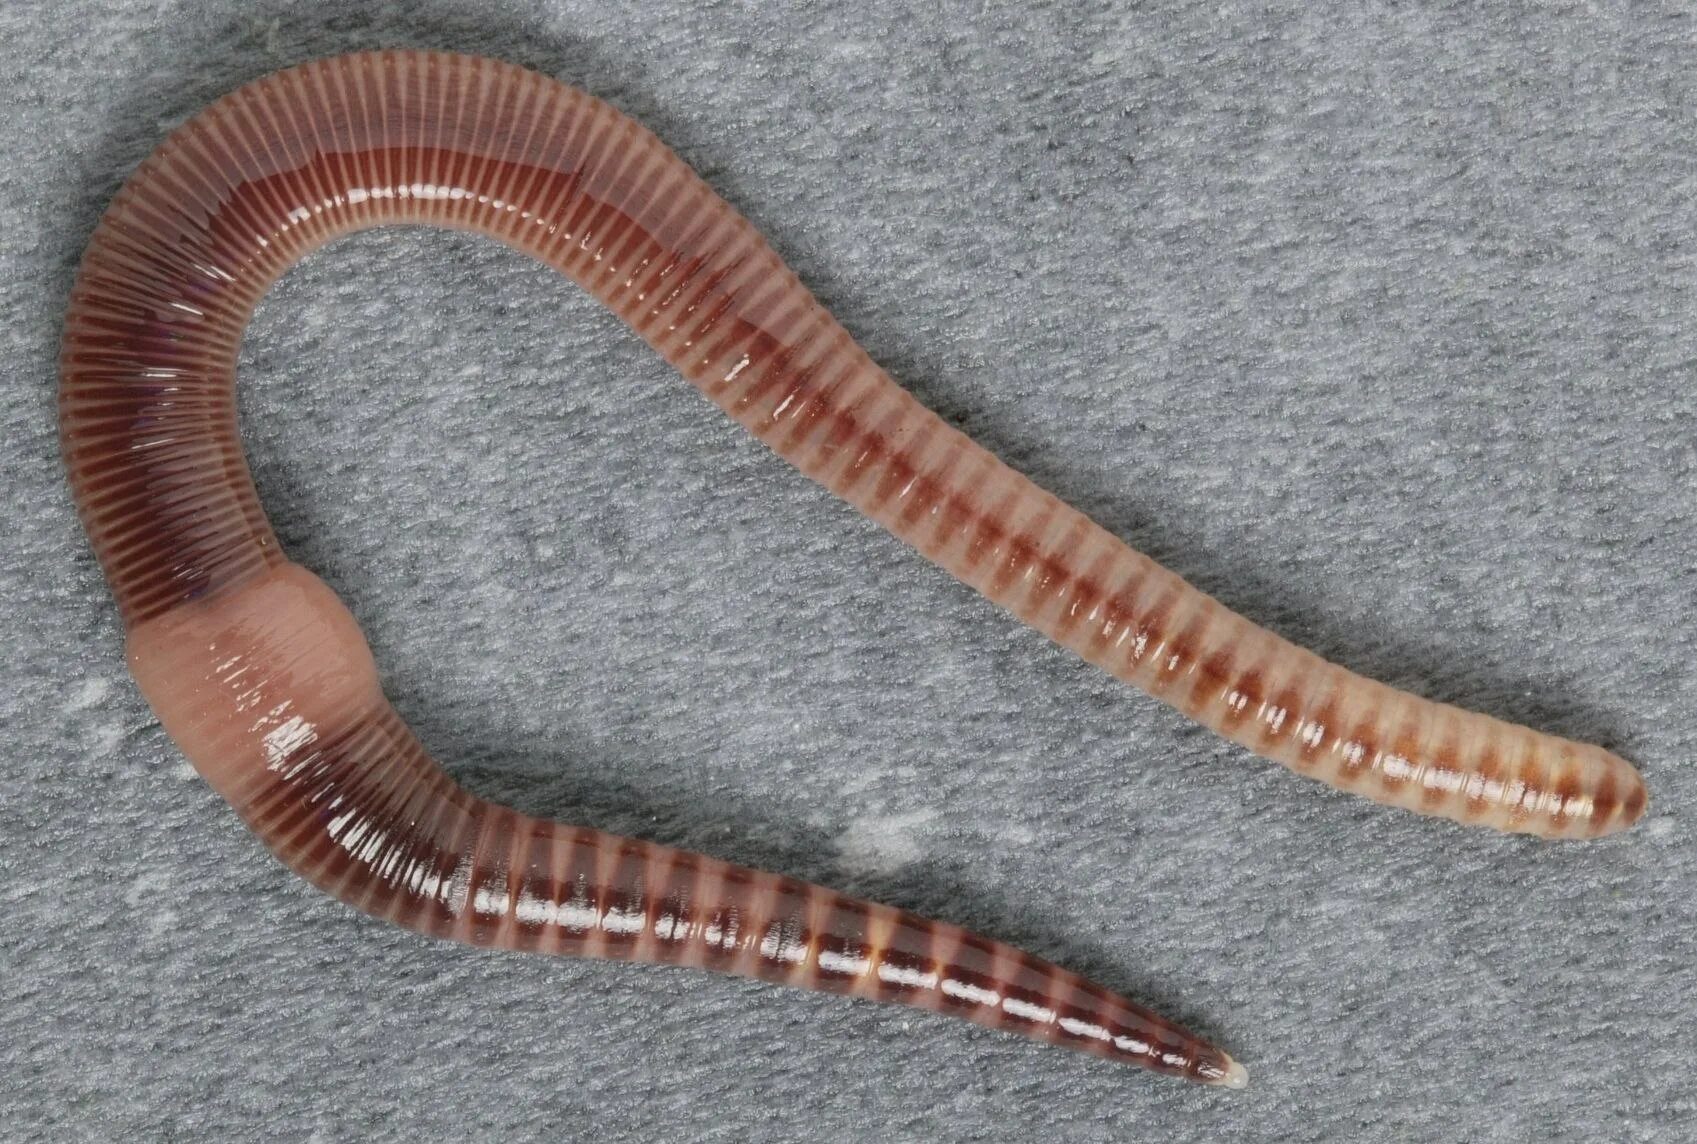 Лестничные черви. Малошетниковфй крльчатые черви. Малощетинковые кольчатые черви. Малощетинковые черви (дождевой червь). Oligochaeta (Малощетинковые черви).